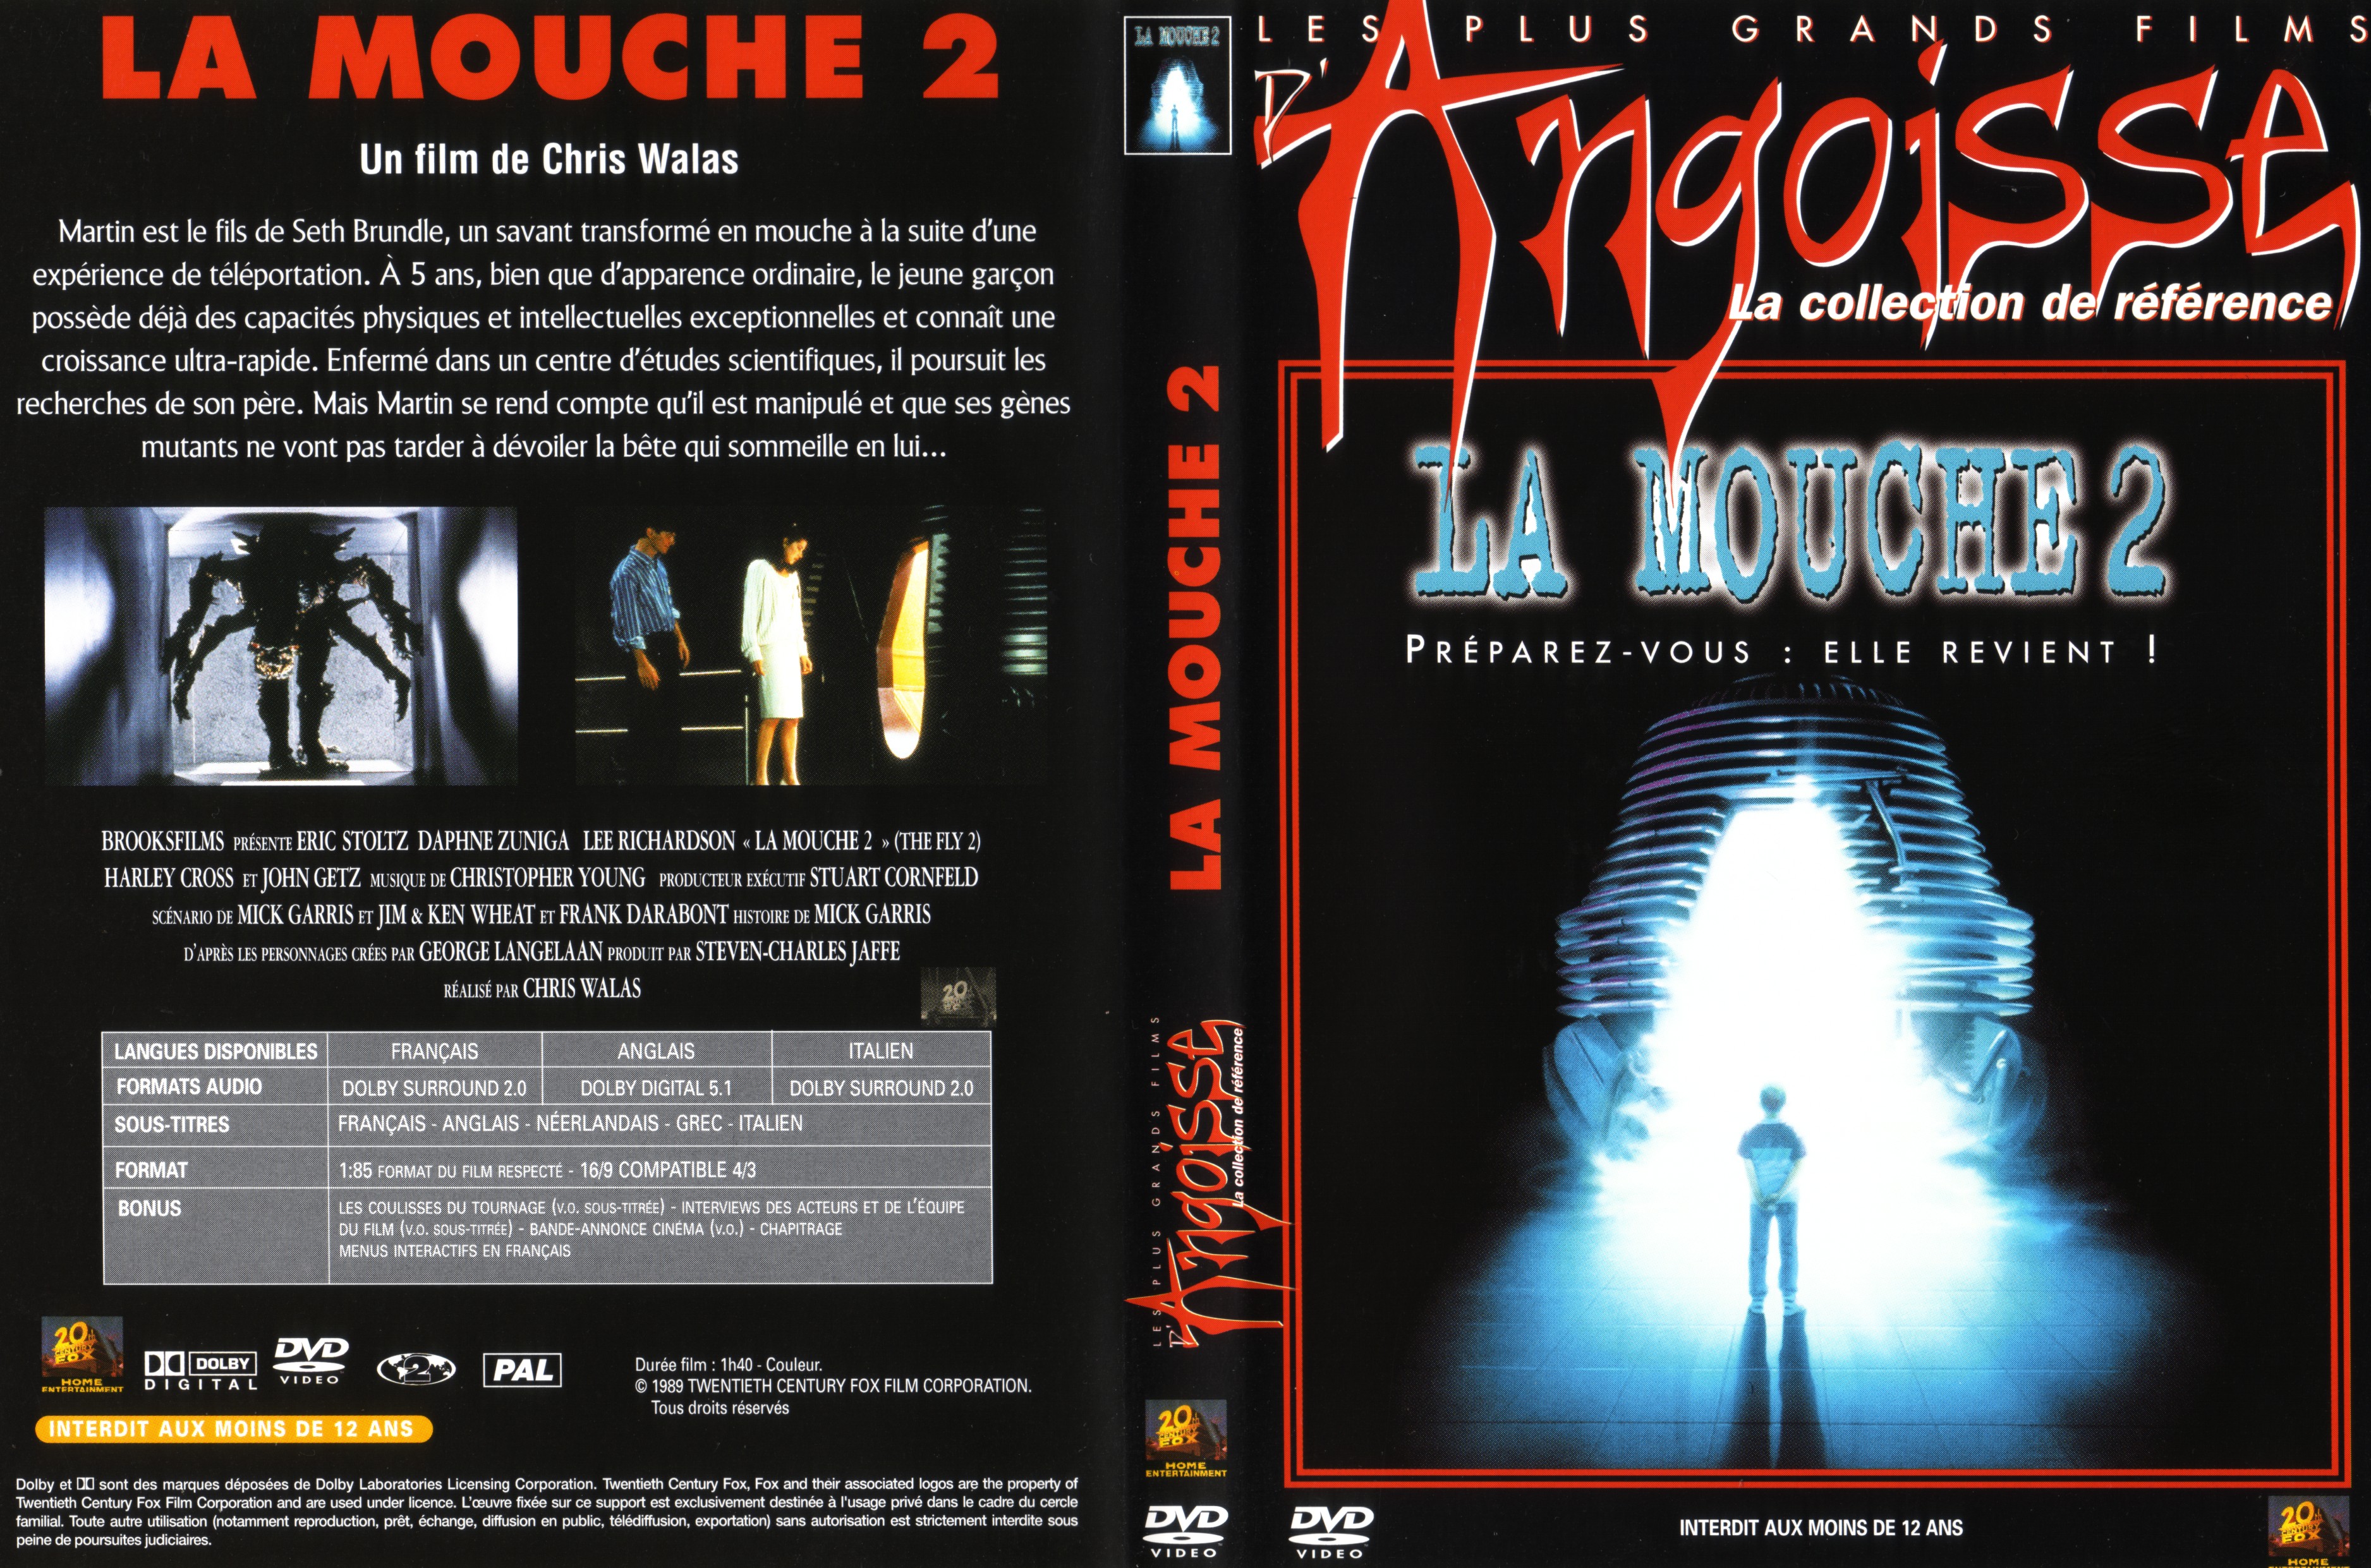 Jaquette DVD La mouche 2 v2